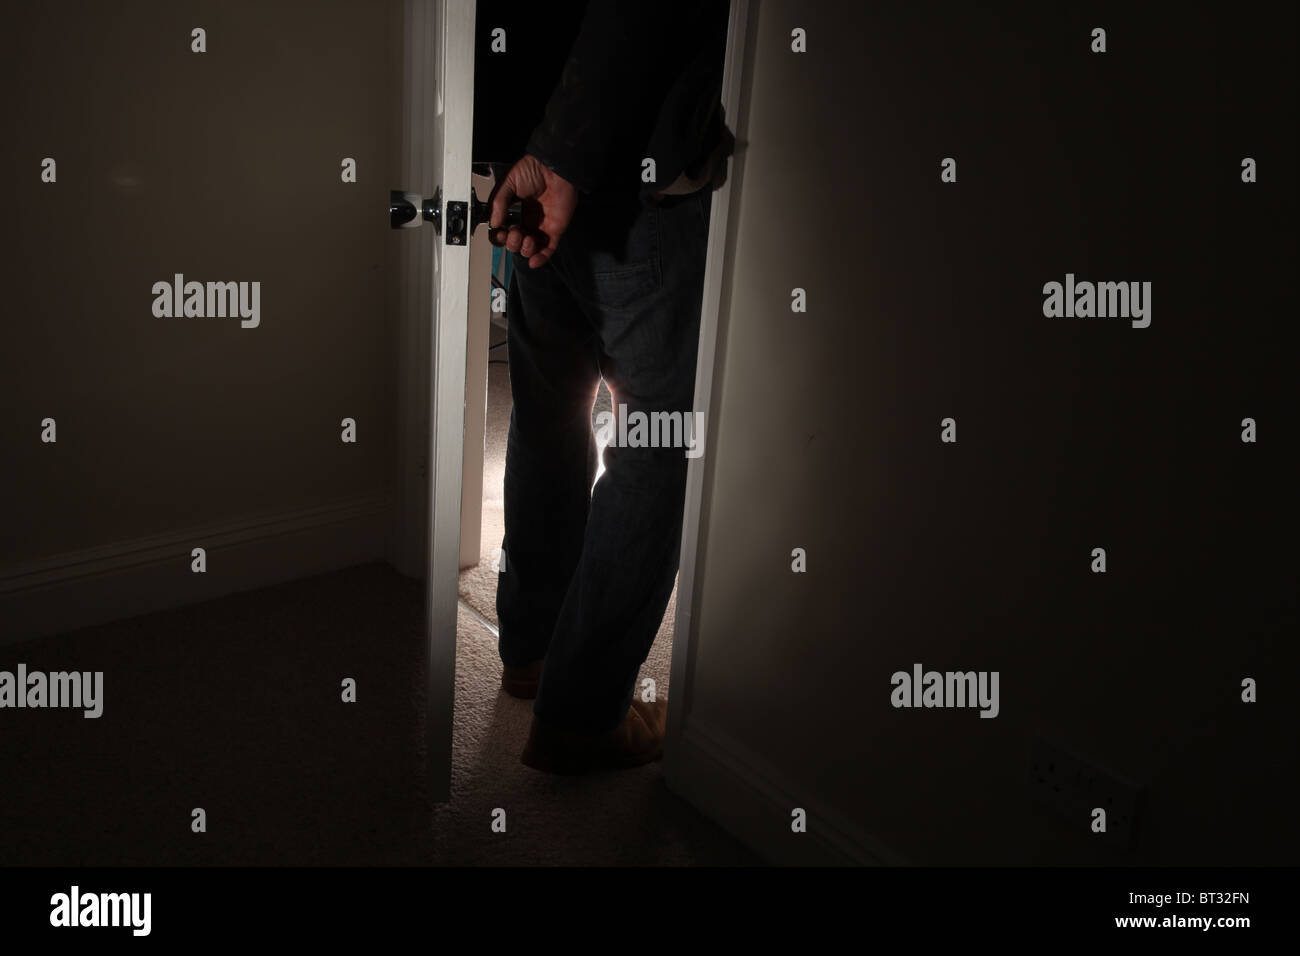 L'uomo ruotando la maniglia di apertura di una porta di entrare in una stanza buia Foto Stock